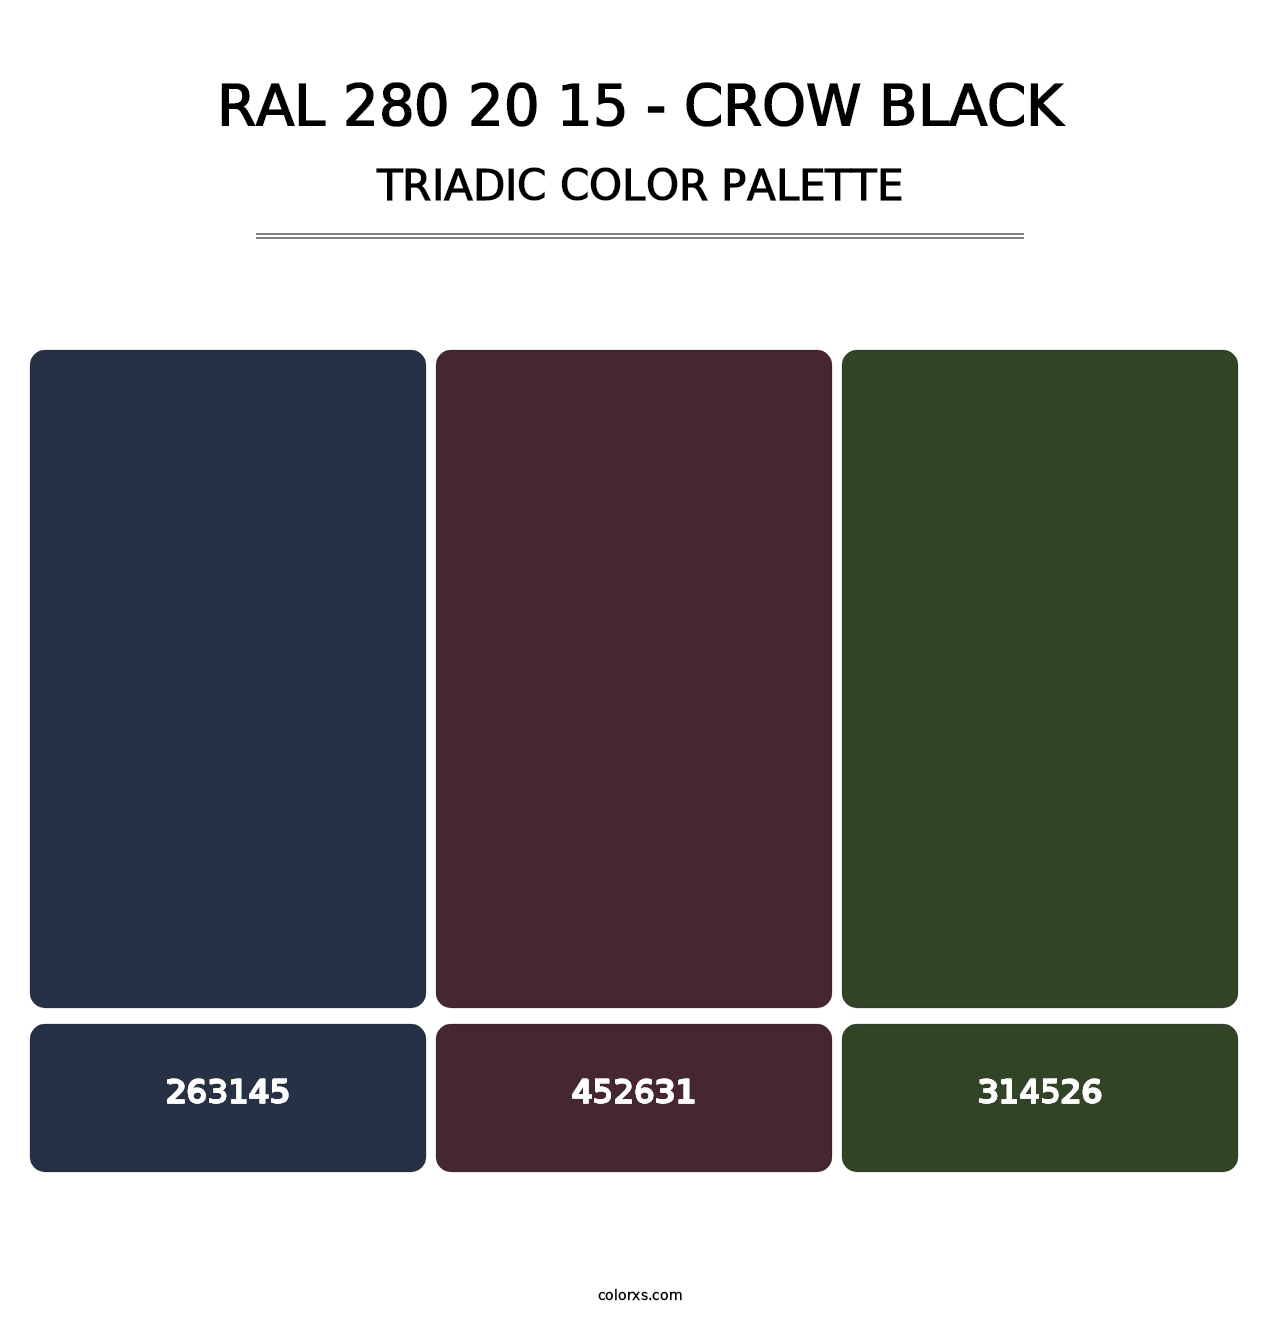 RAL 280 20 15 - Crow Black - Triadic Color Palette